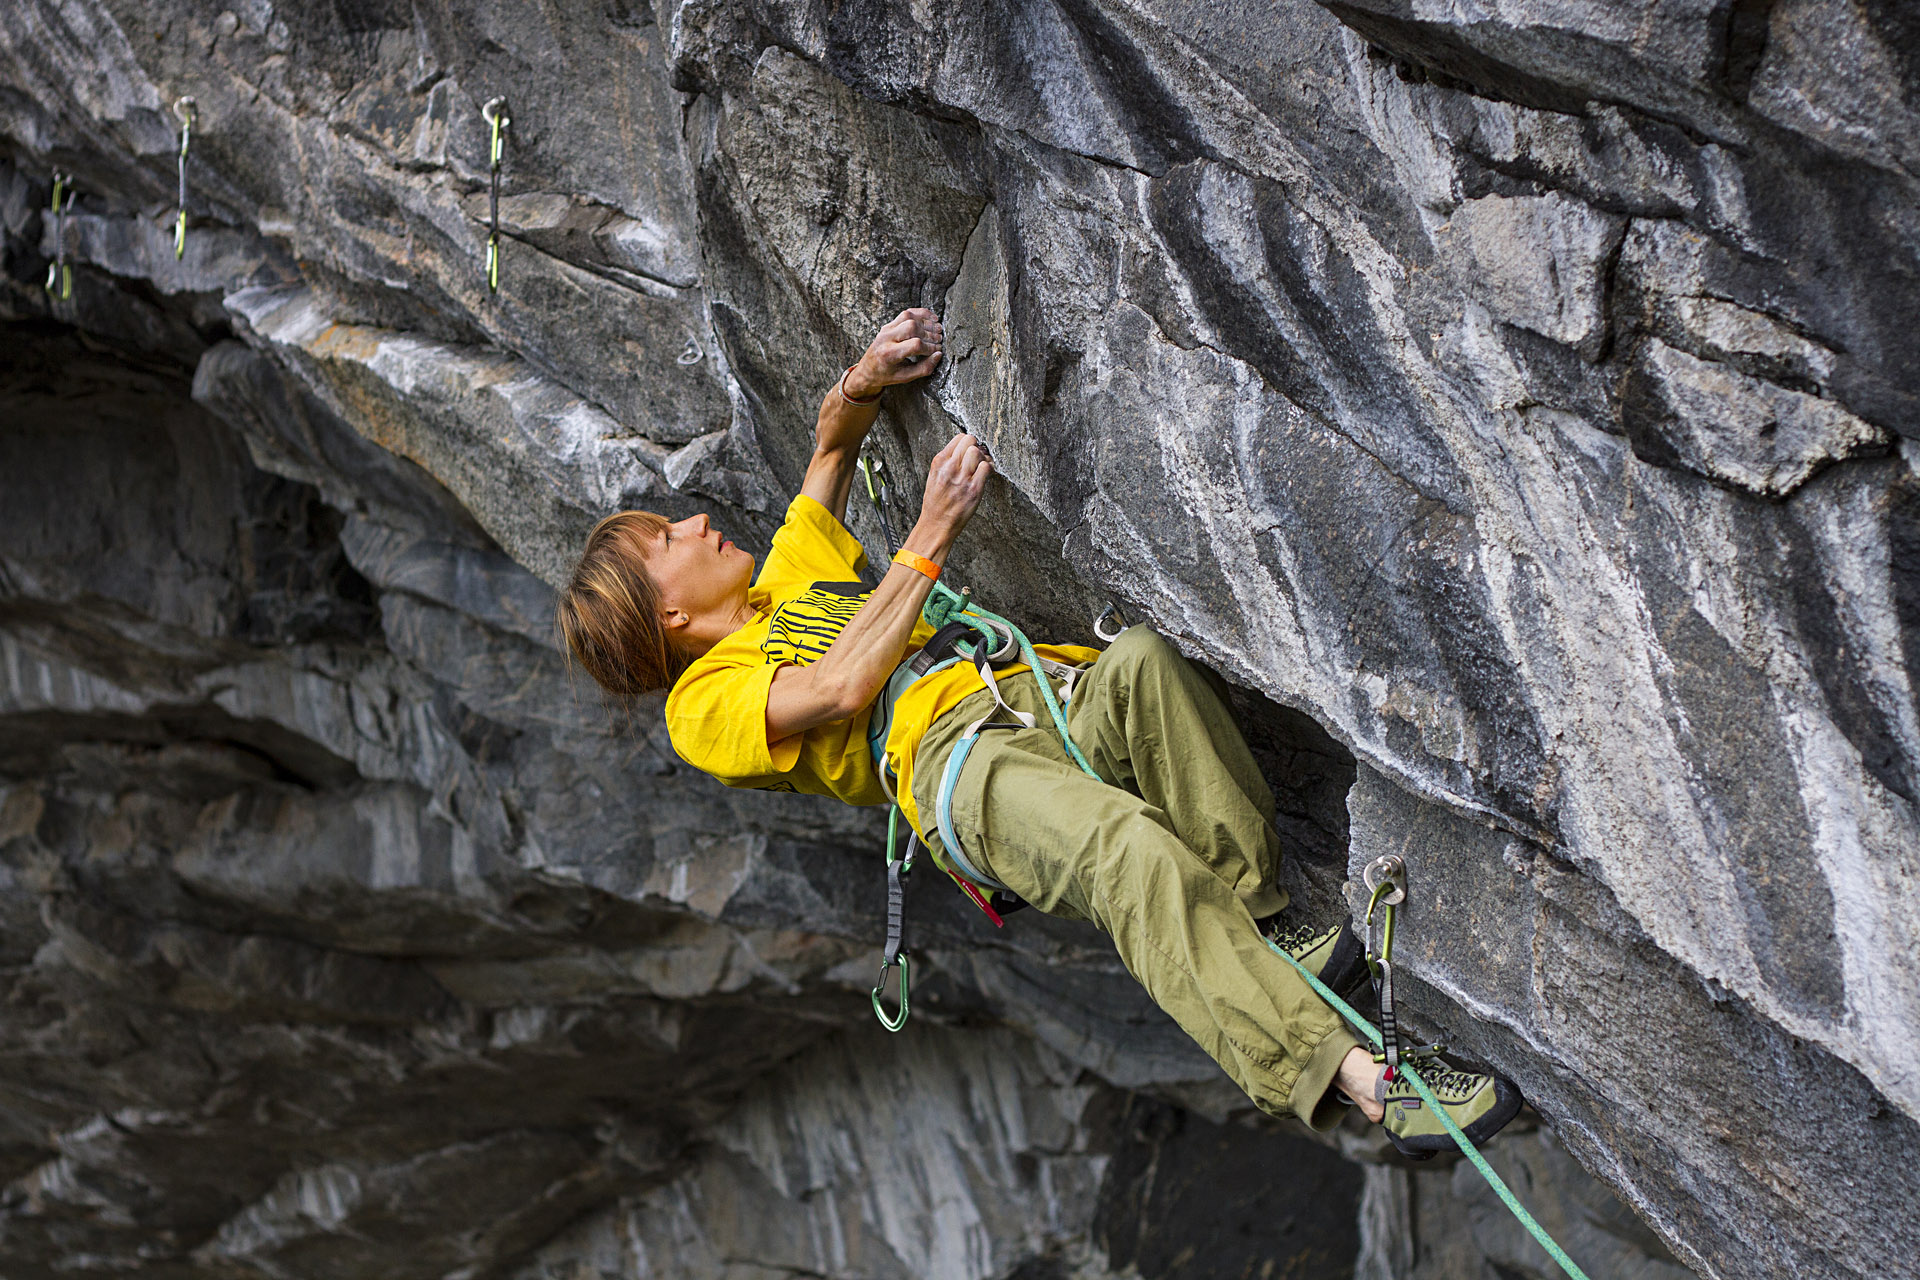 Malin Holmberg climbing in Flatanger Cave Norway, Photographer, filmmaker, Alexander Rydén, Klättring, fotograf klättring, filmare klättring